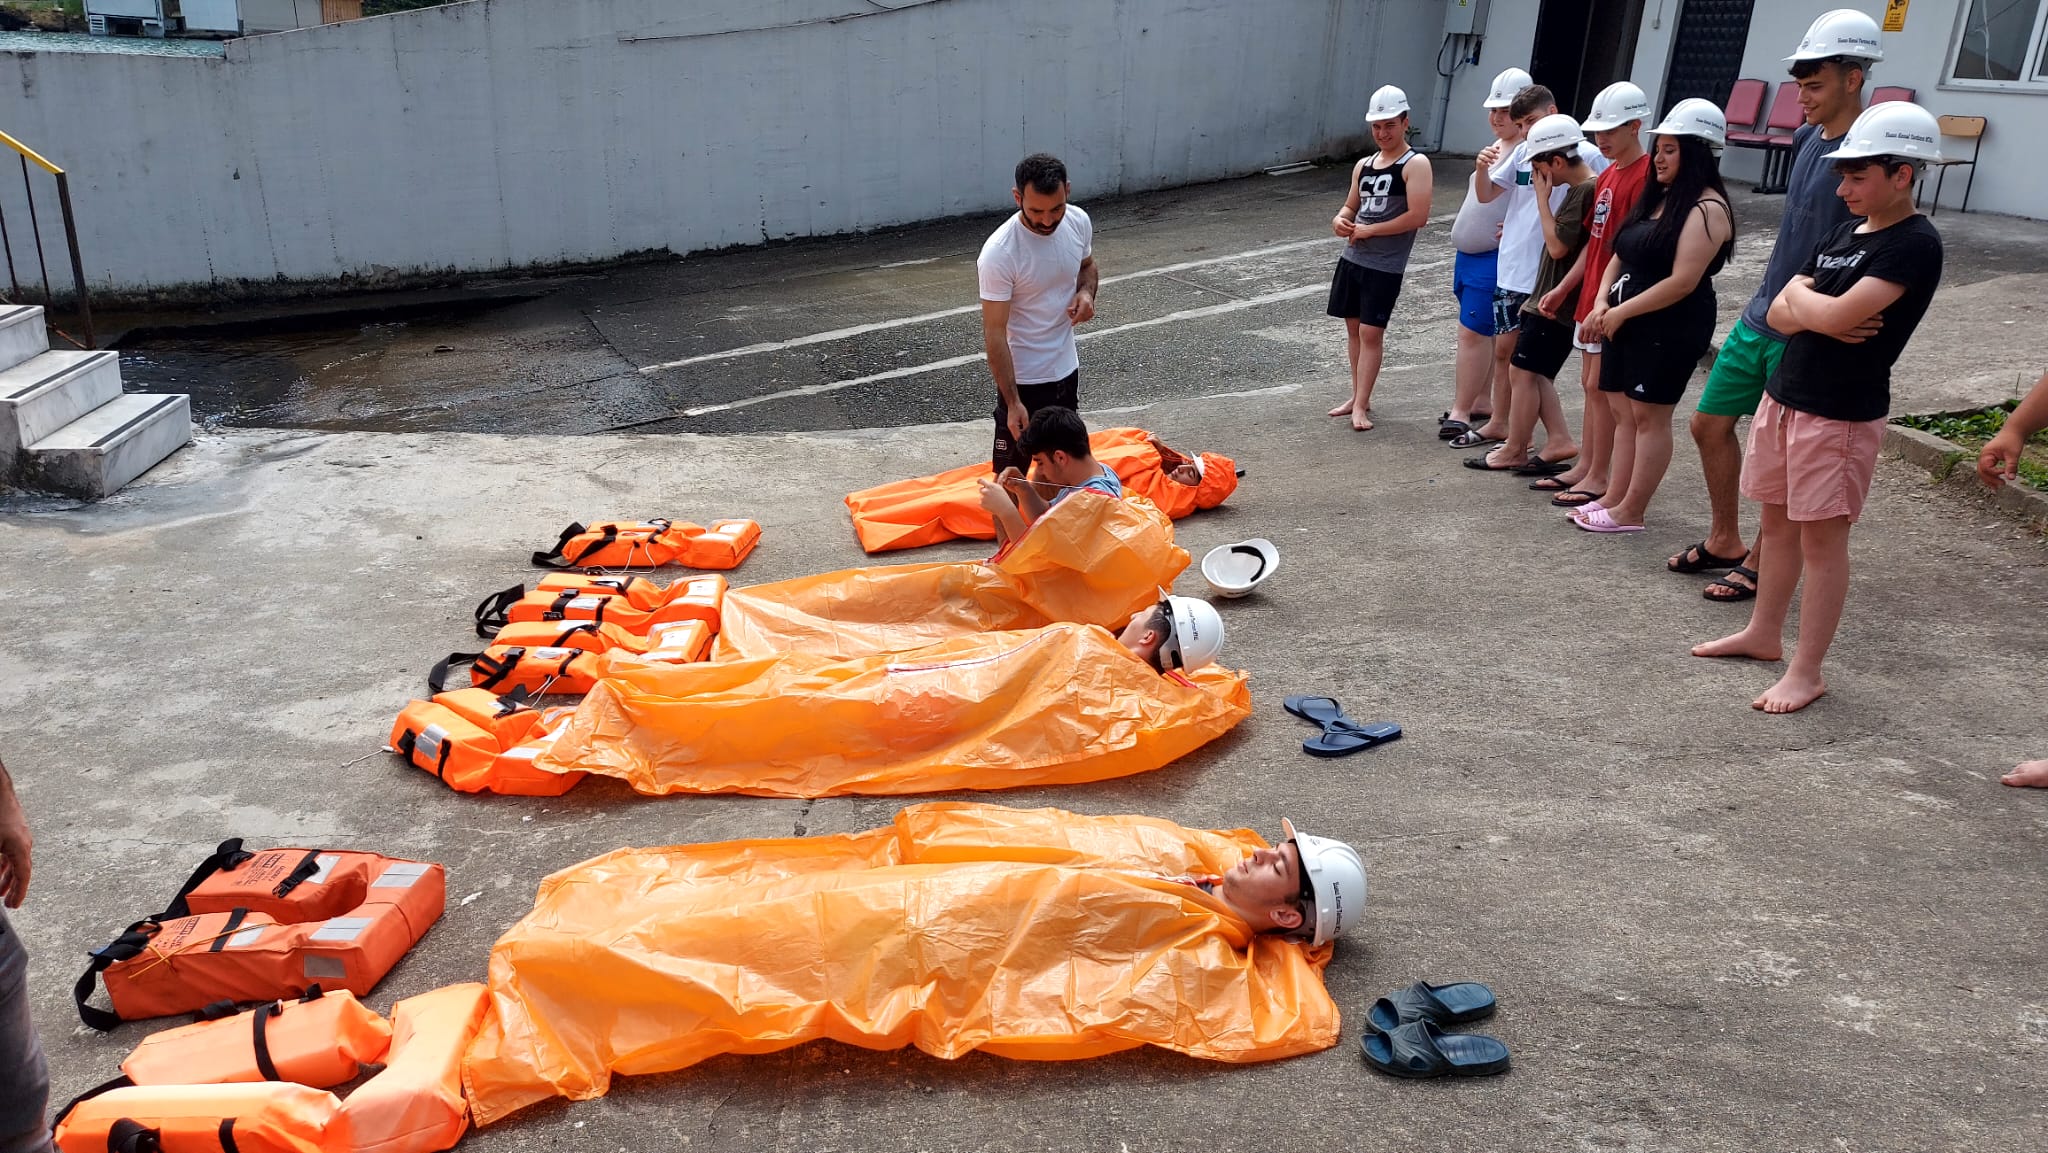 Rize’de Denizcilik Lisesi Öğrencileri ,Denizcilik Mesleğini Uygulamalı Öğreniyor